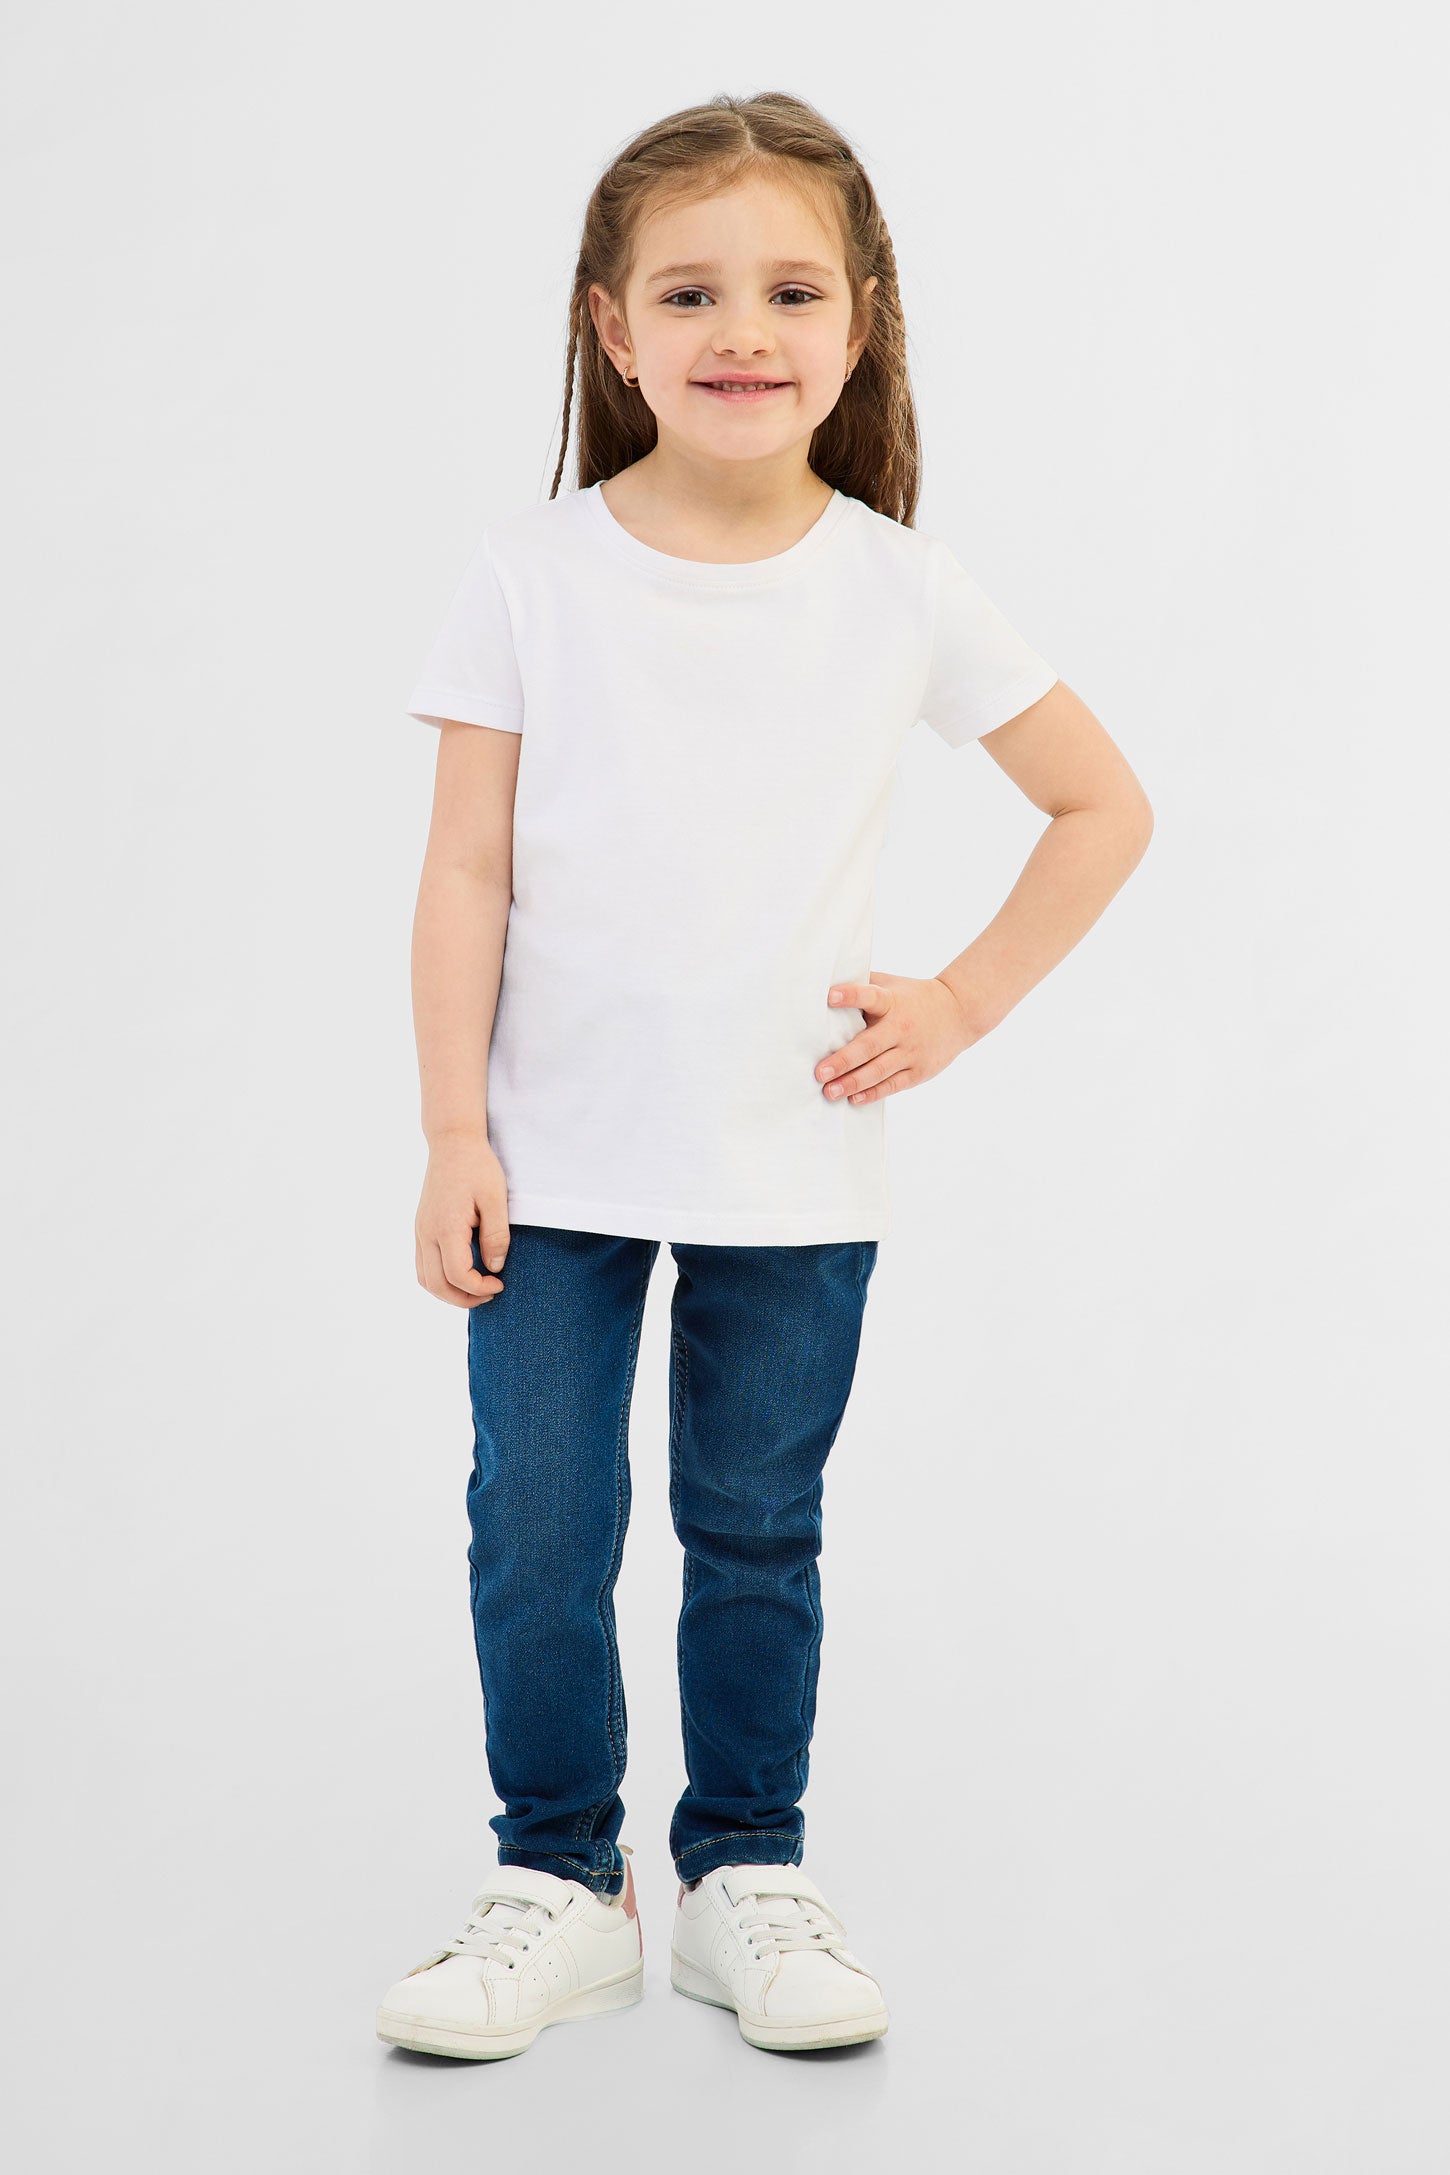 T-shirt en coton, 2/20$ - Enfant fille && BLANC